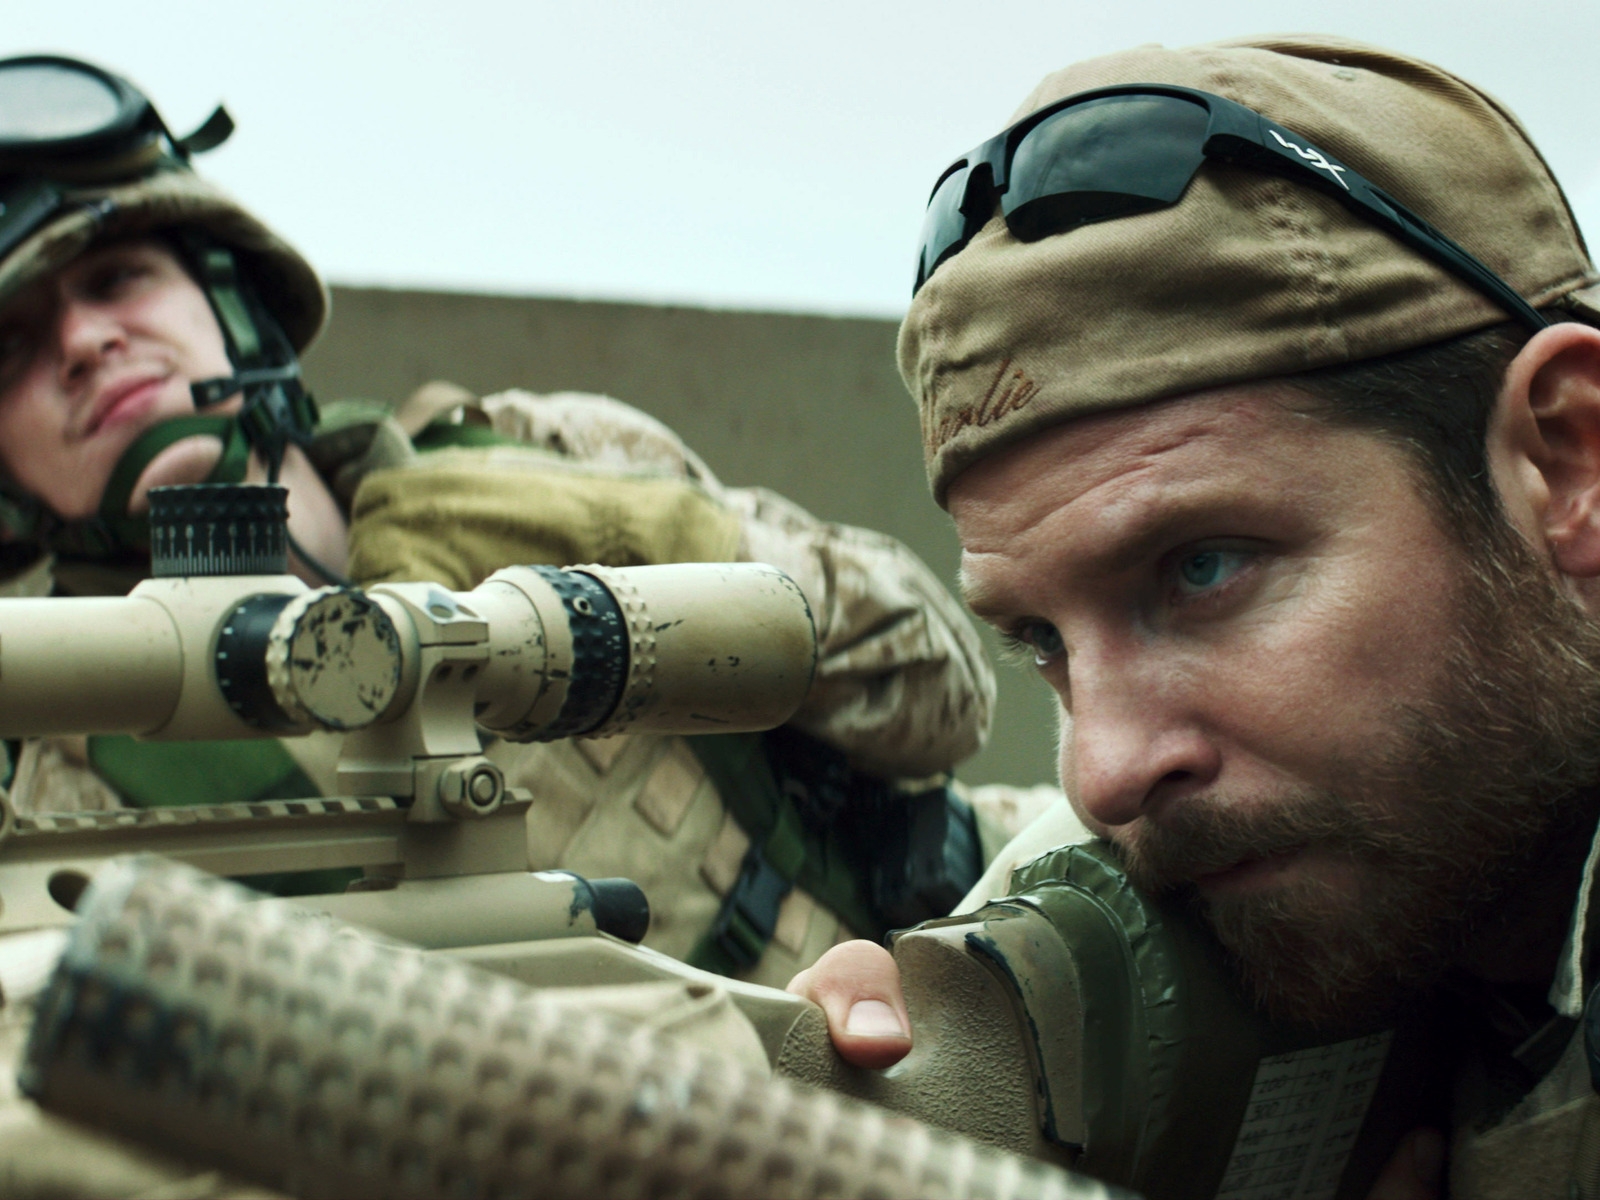 American Sniper Movie Scene for 1600 x 1200 resolution